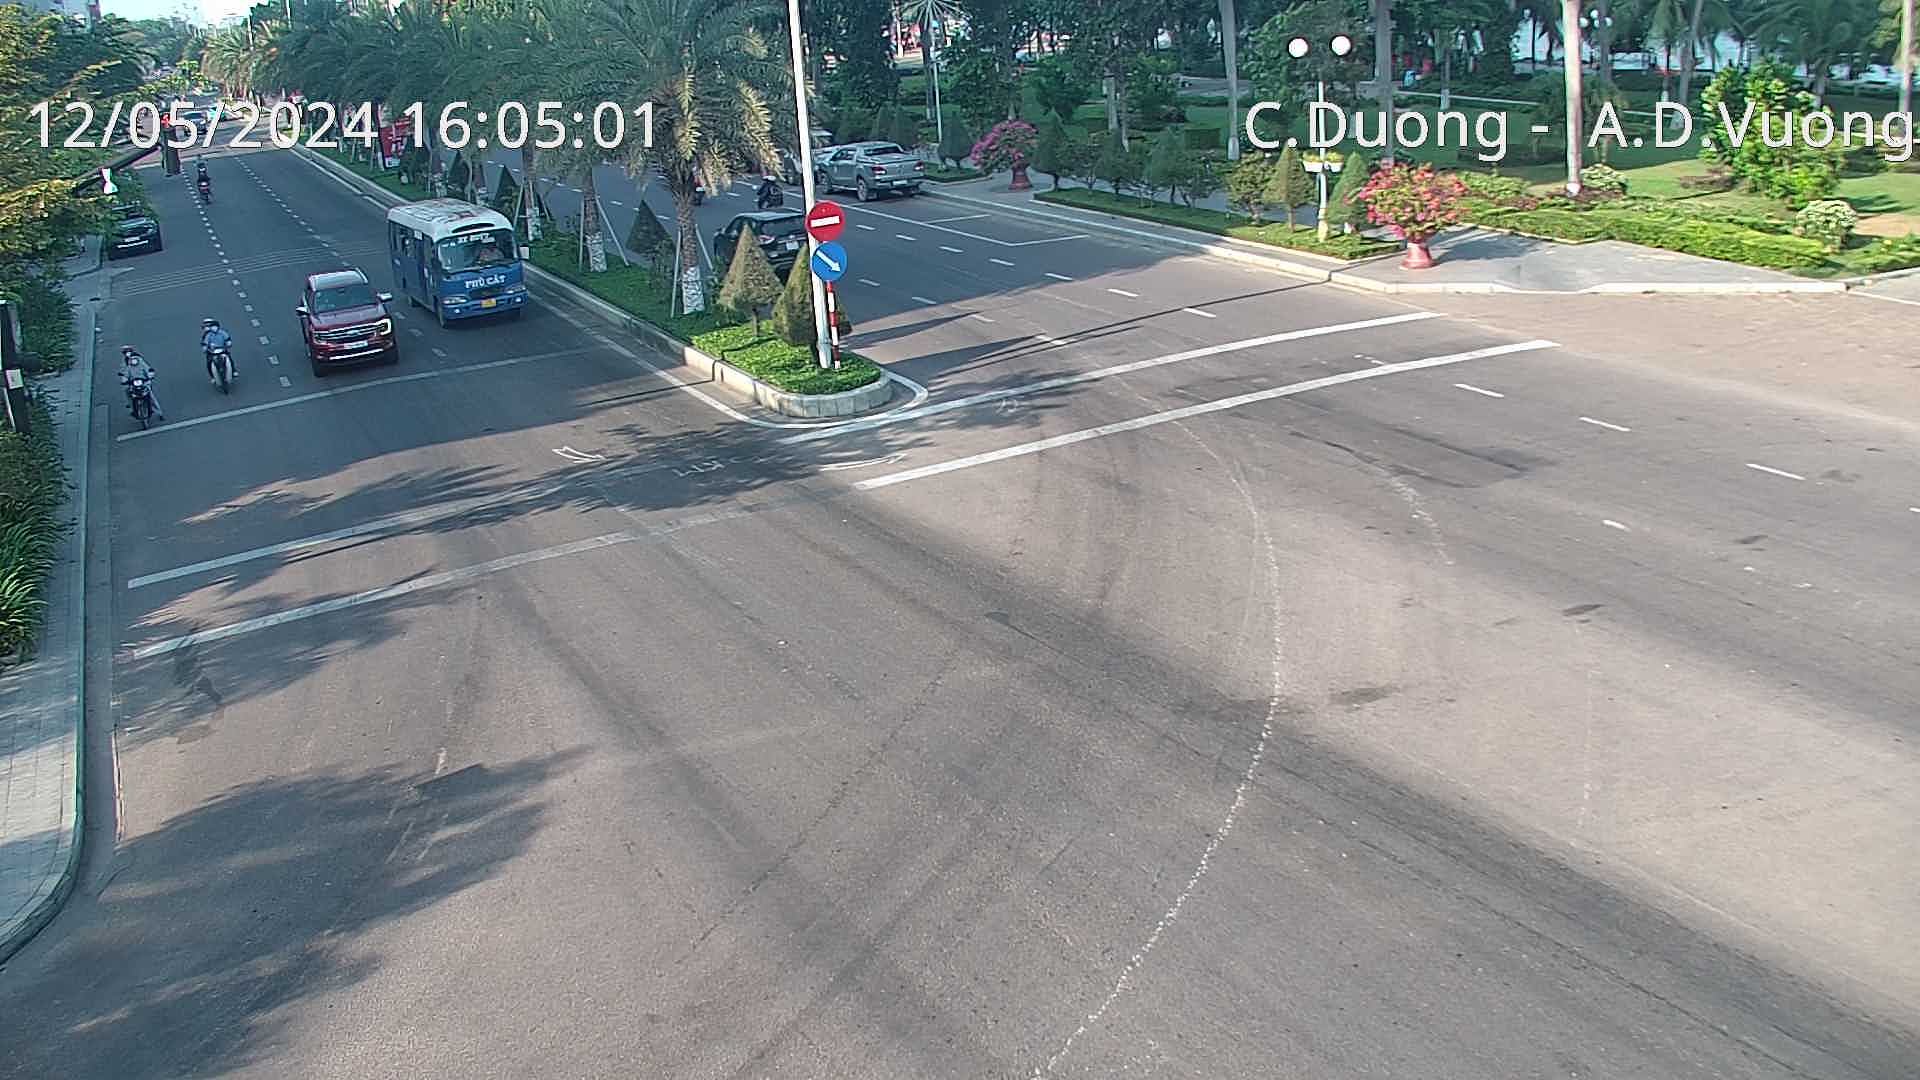 Xem camera giao thông Quy Nhơn Bình Định hình ảnh camera tuyến đường Ngã 3 Chương Dương - An Dương Vương